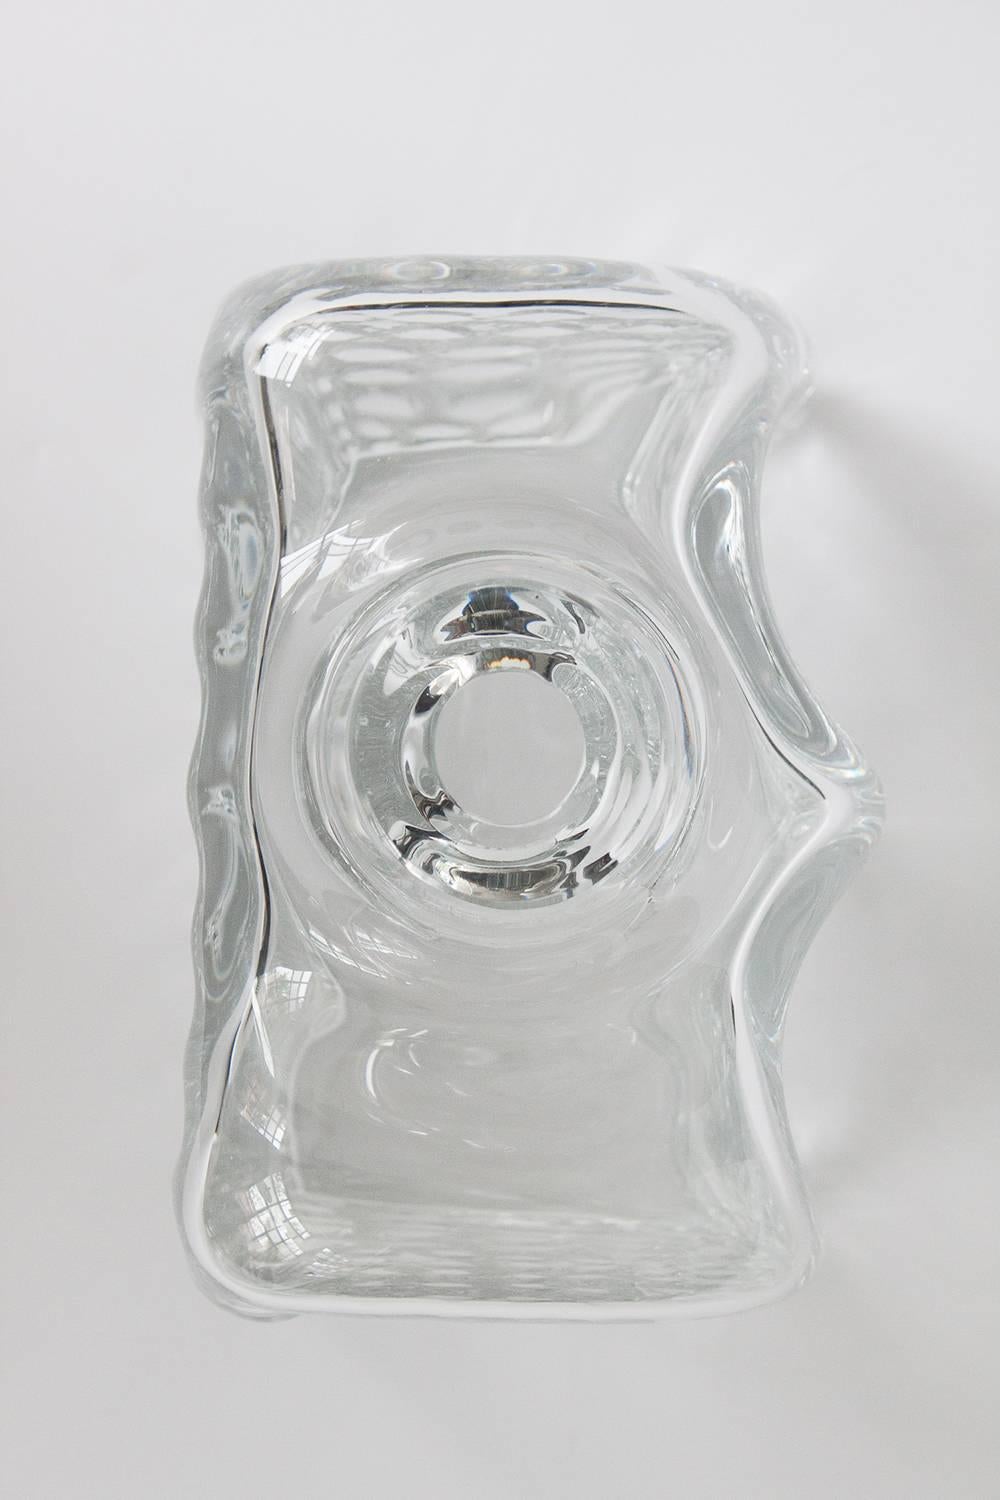 Blown Glass Willem Heesen Manhattan Series Glass Vase for Leerdam Unica